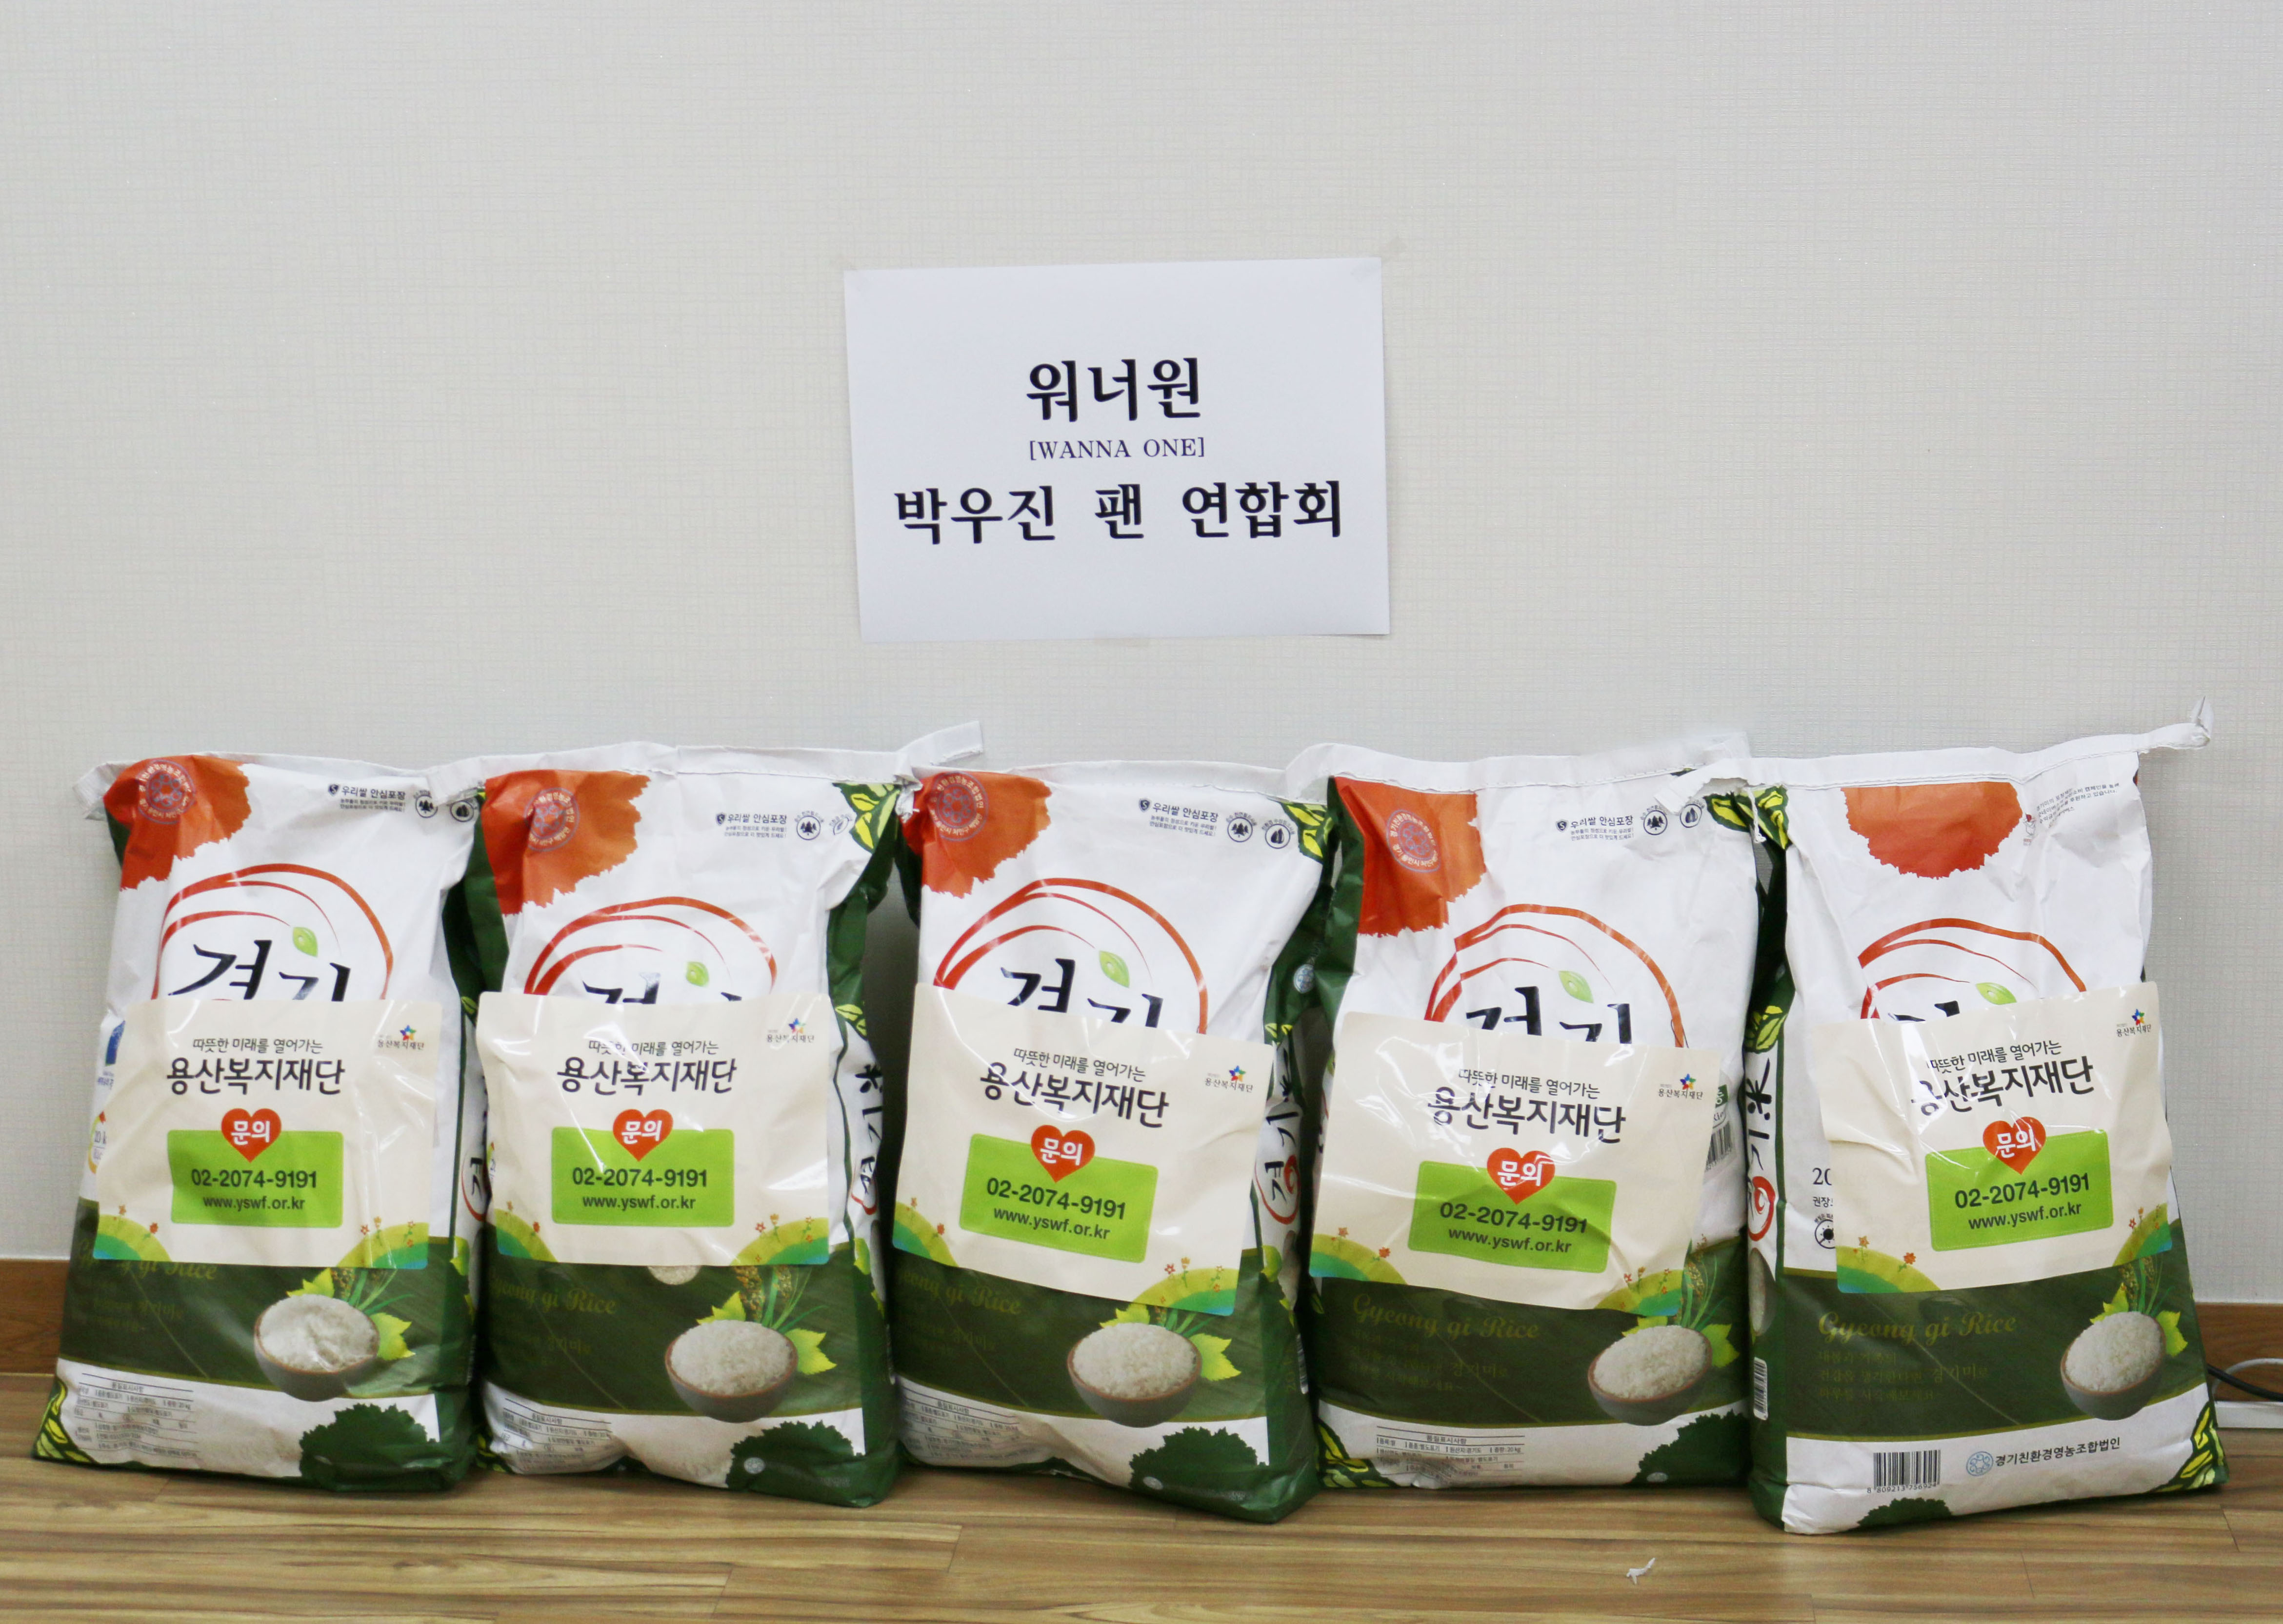 박우진(워너원) 개인팬연합회 쌀기부 사진